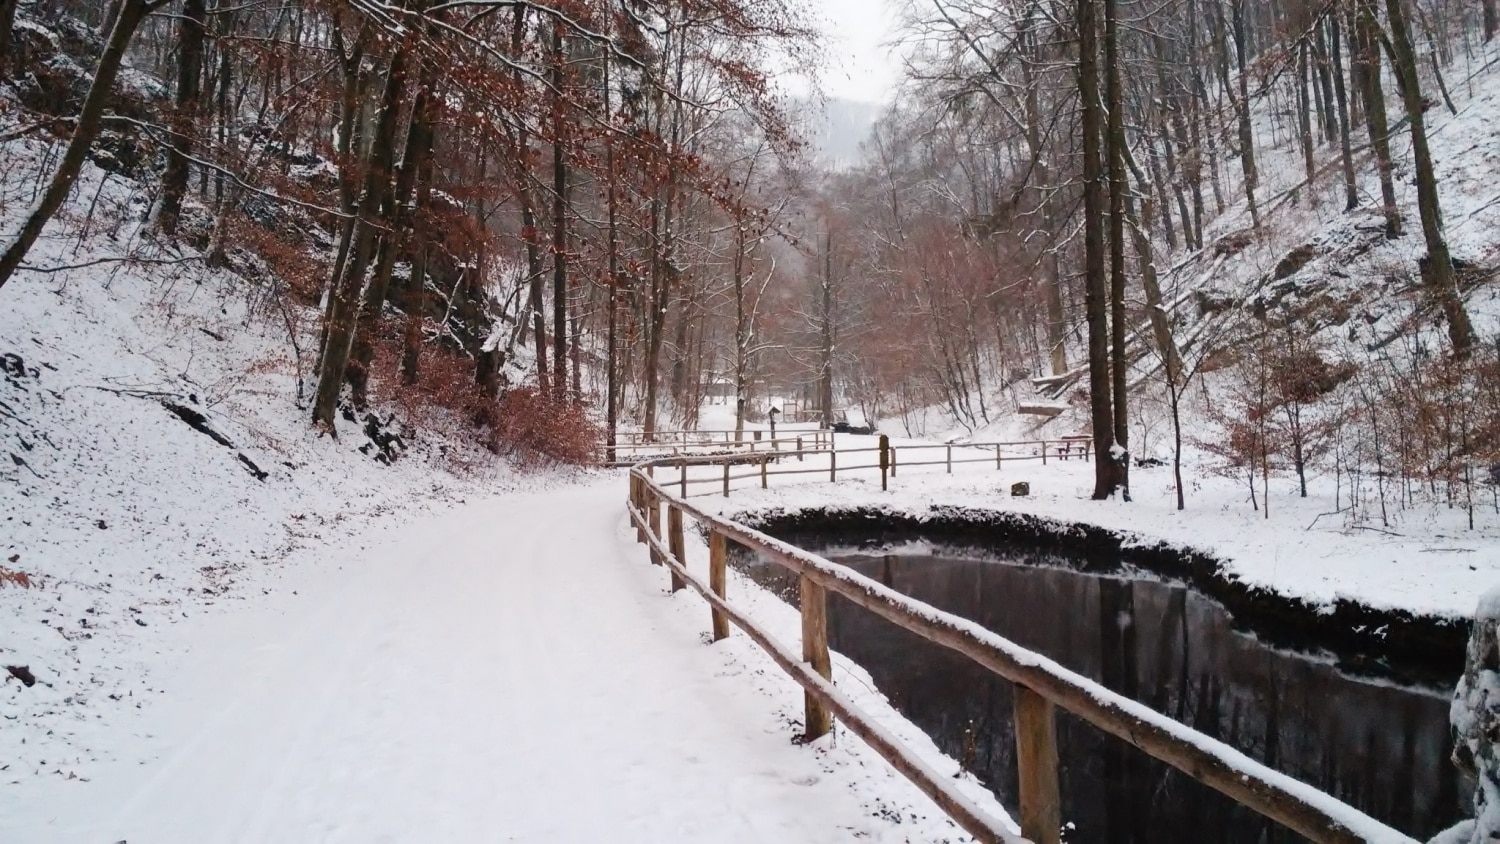 A 4 legszebb téli kirándulóhely Magyarországon, ami energiával tölt fel